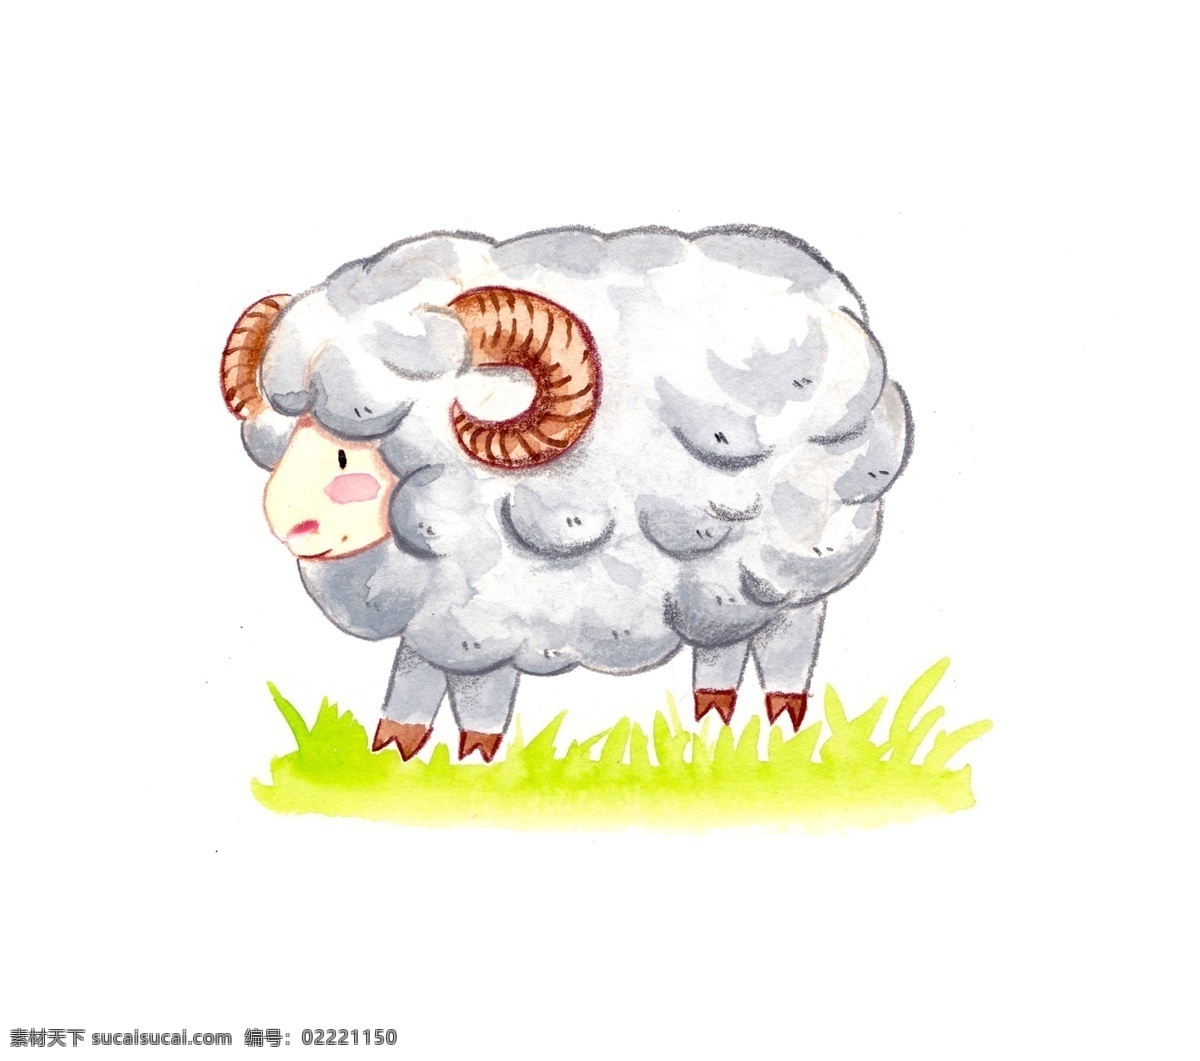 水彩 手绘 可爱 小绵羊 水彩手绘 水彩小动物 绘本小动物 绘本 可爱小绵羊 儿童简笔画 纸绘 小羊